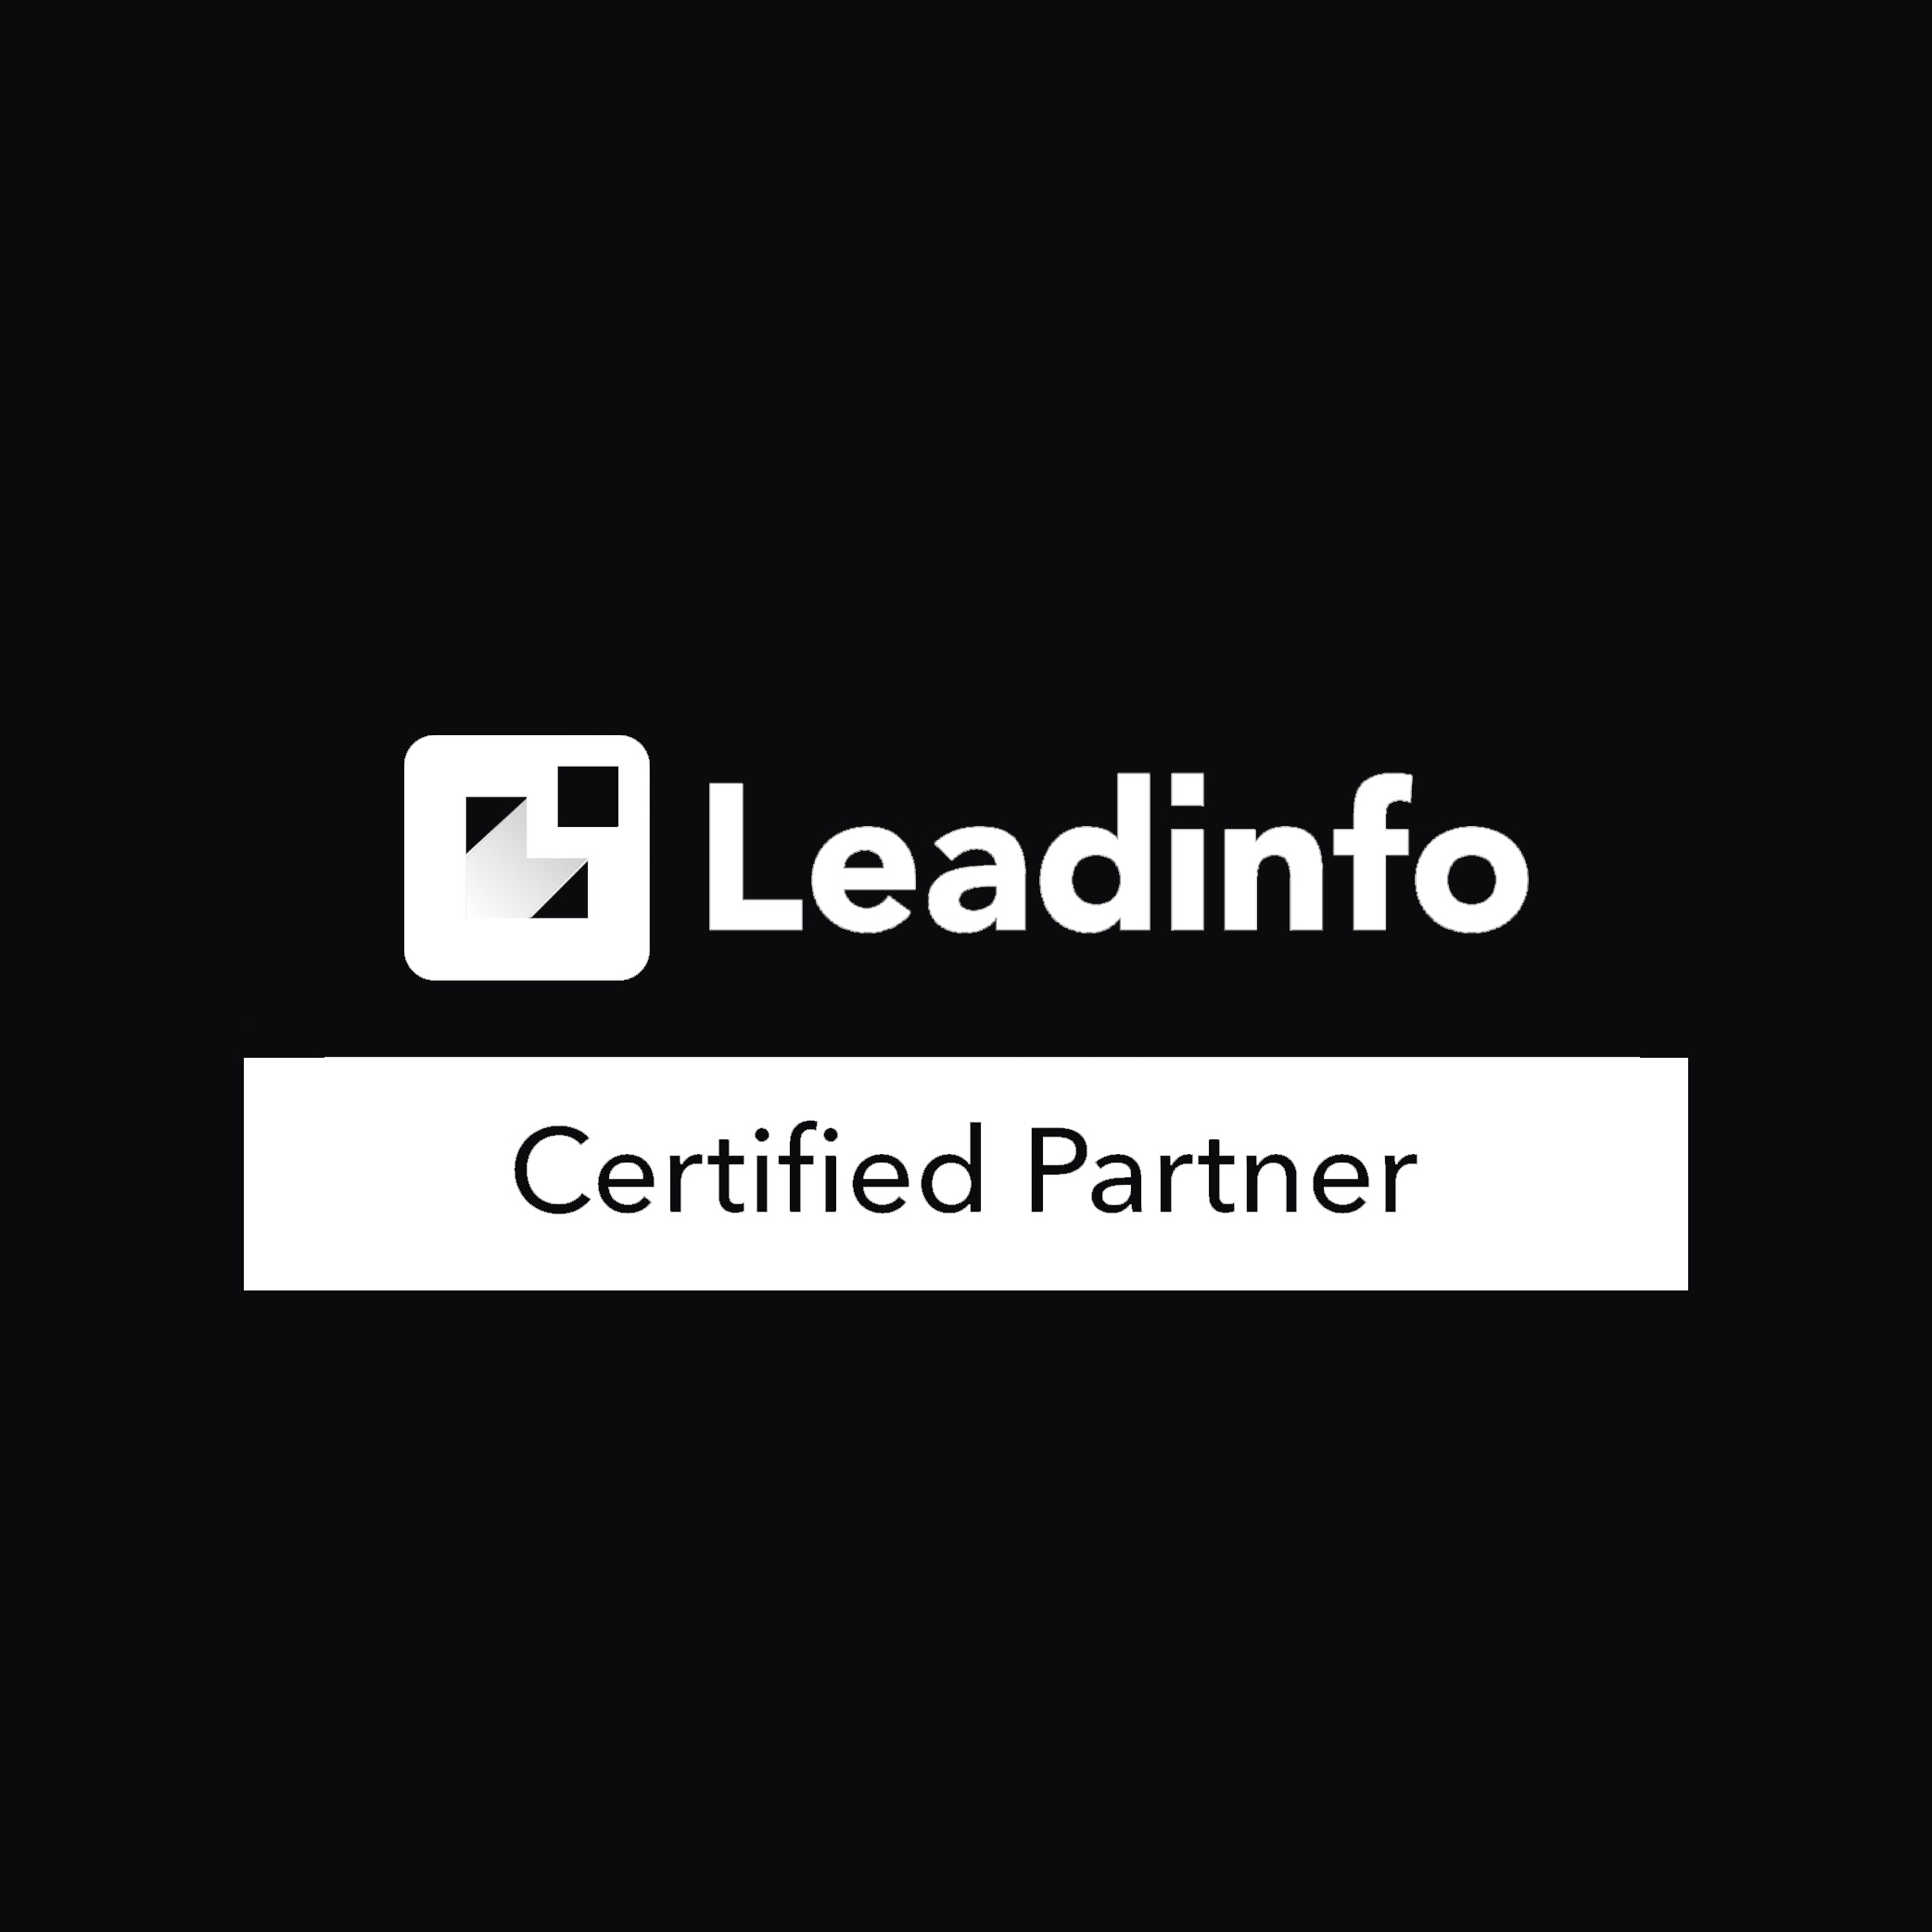 Reech Lead Info Partner